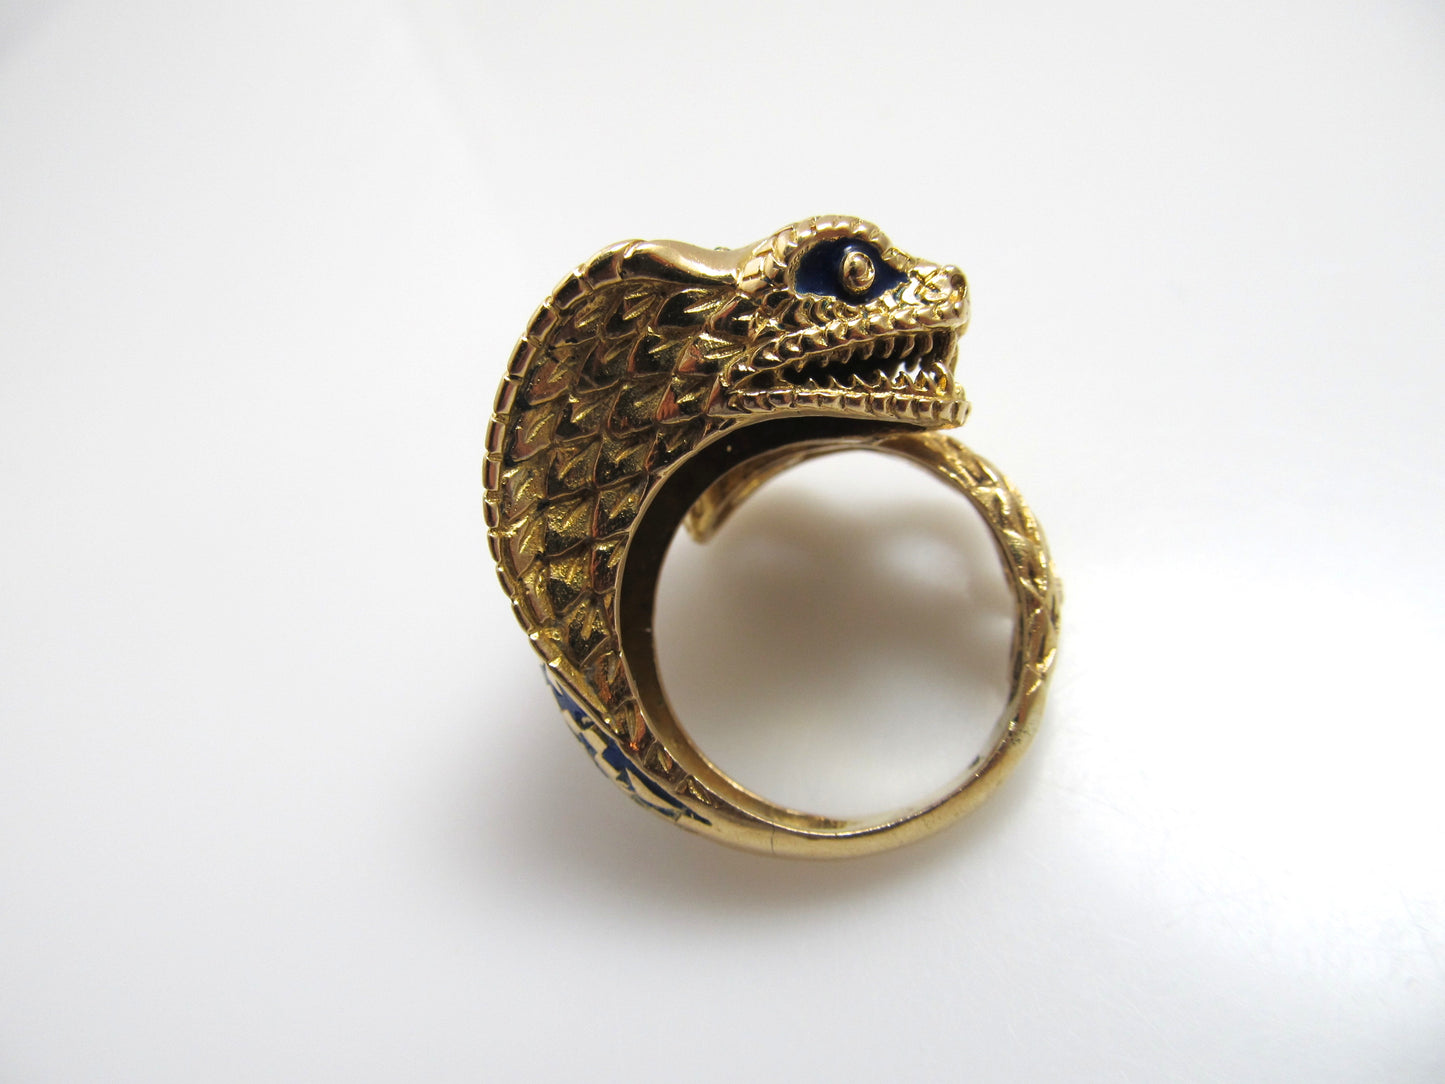 Super cool 18k enamel cobra snake ring